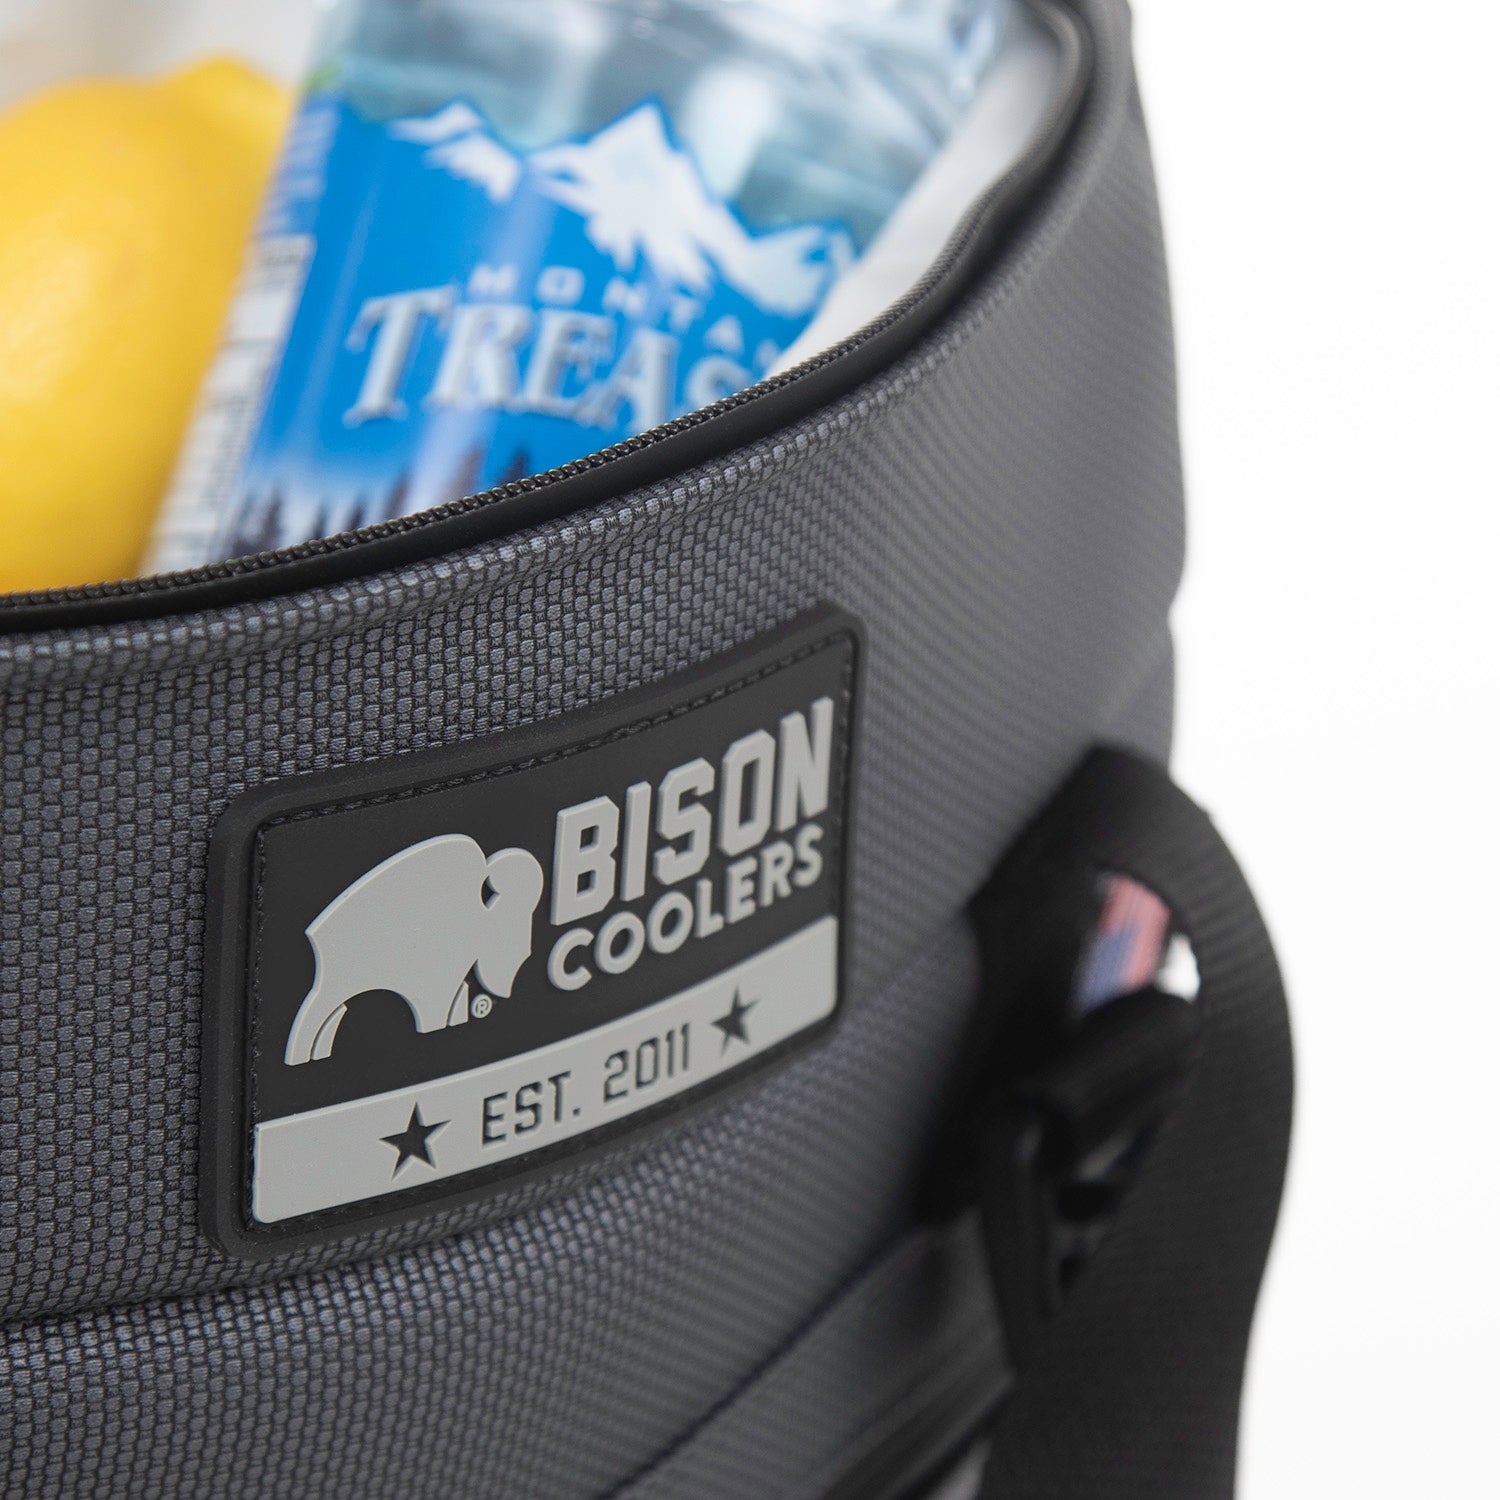 Bison coolers established 2011